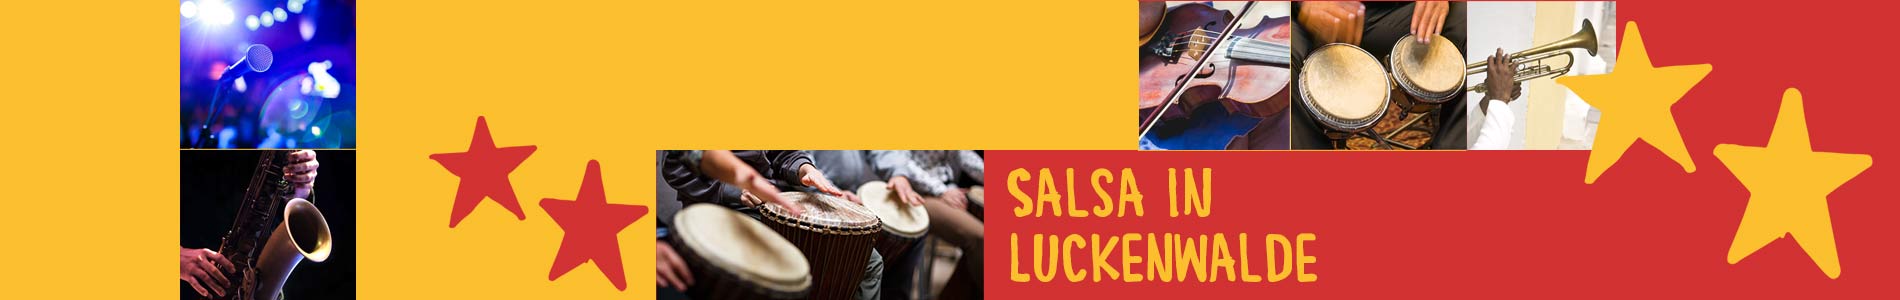 Salsa in Luckenwalde – Salsa lernen und tanzen, Tanzkurse, Partys, Veranstaltungen